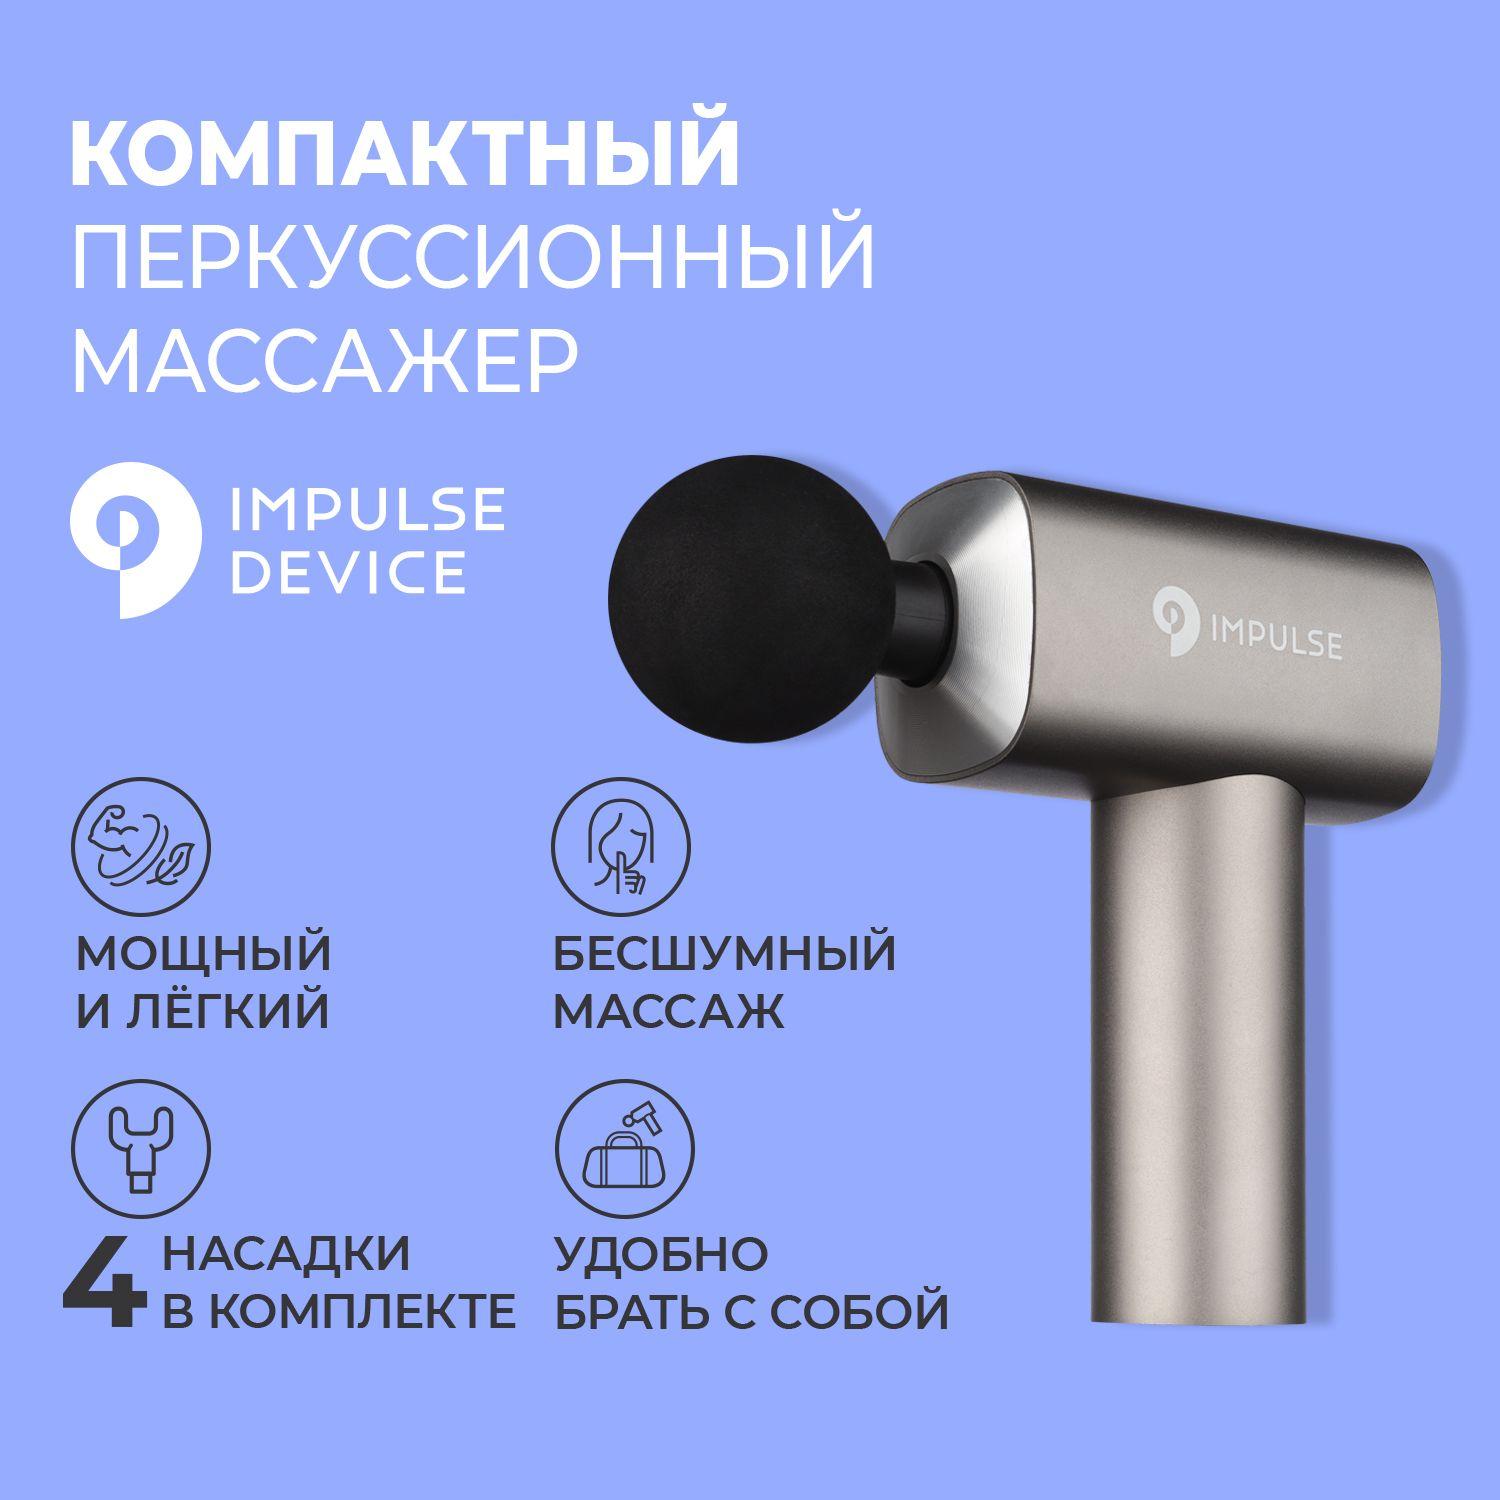 Impulse Device | Перкуссионный массажер, Impulse Sport , мини массажер для шеи и плеч